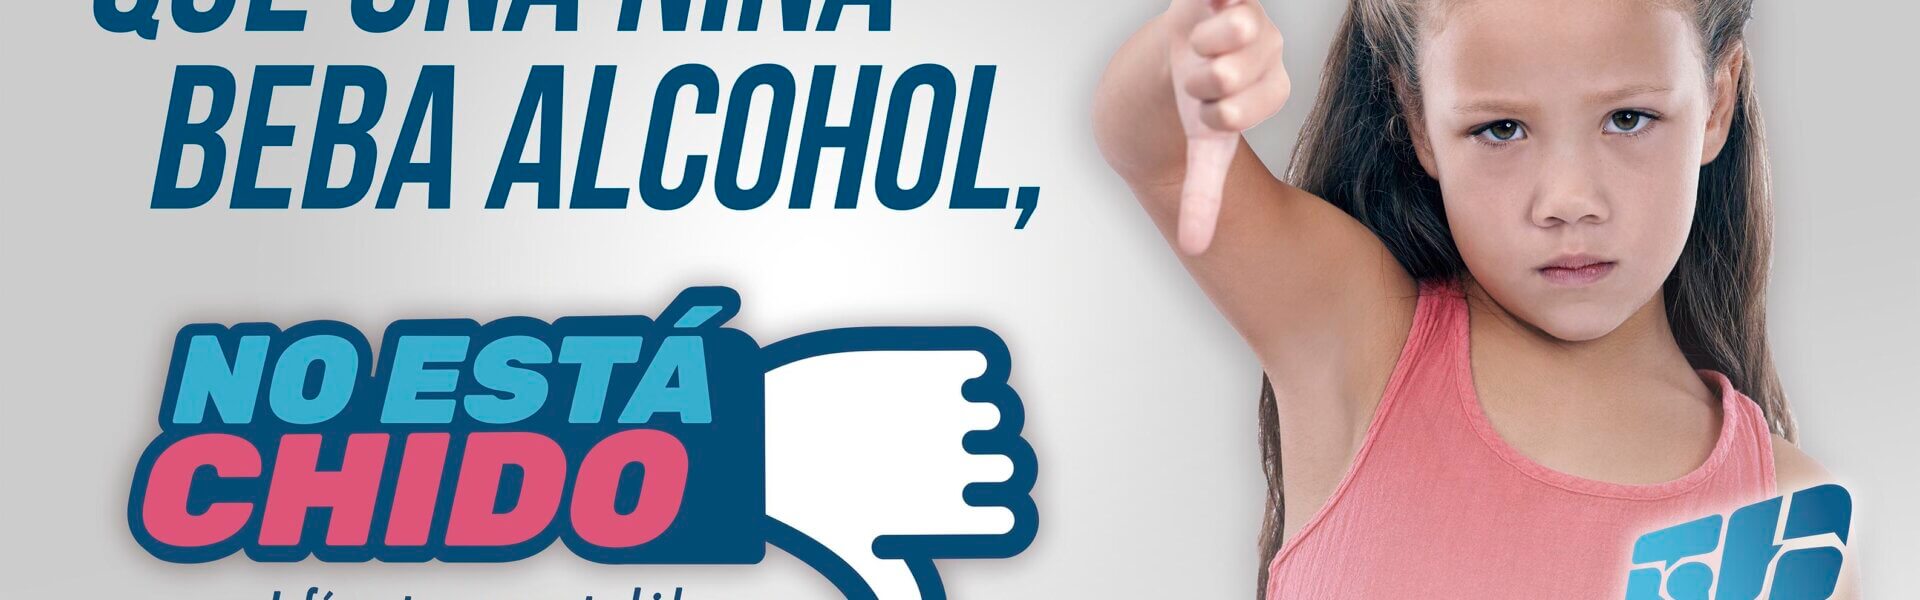 lo chido es evitar que las niñas y niños consuman alcohol